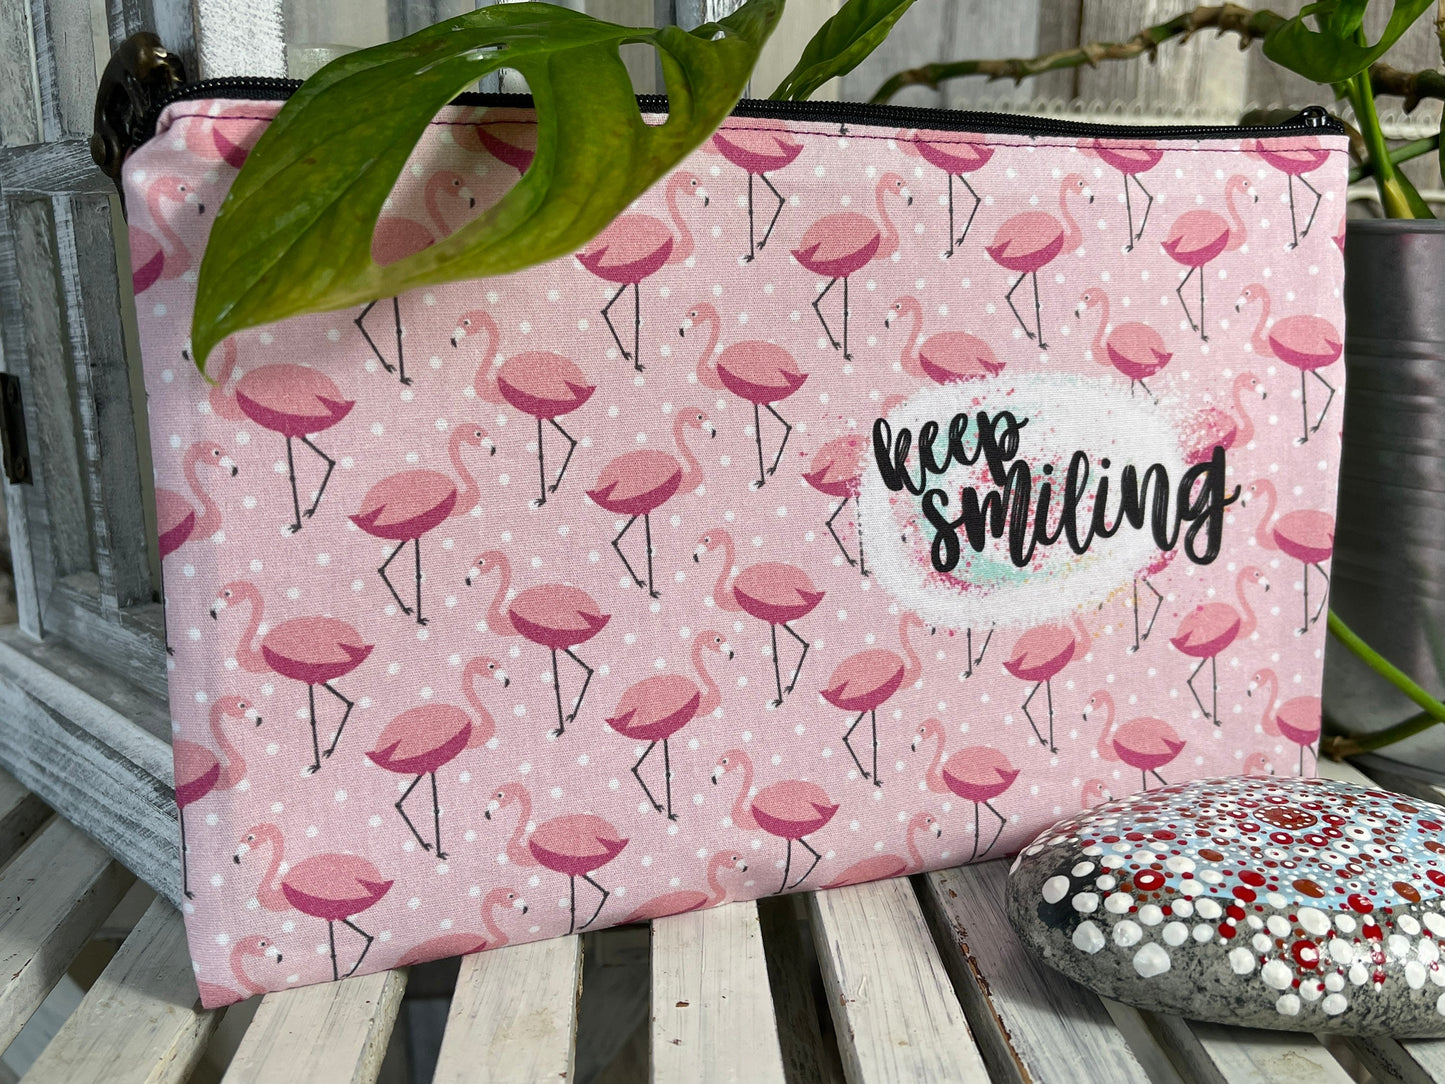 Stylische Federtasche Stifttasche Mäppchen Kosmetik kleine Tasche keep smiling rosa Flamingo